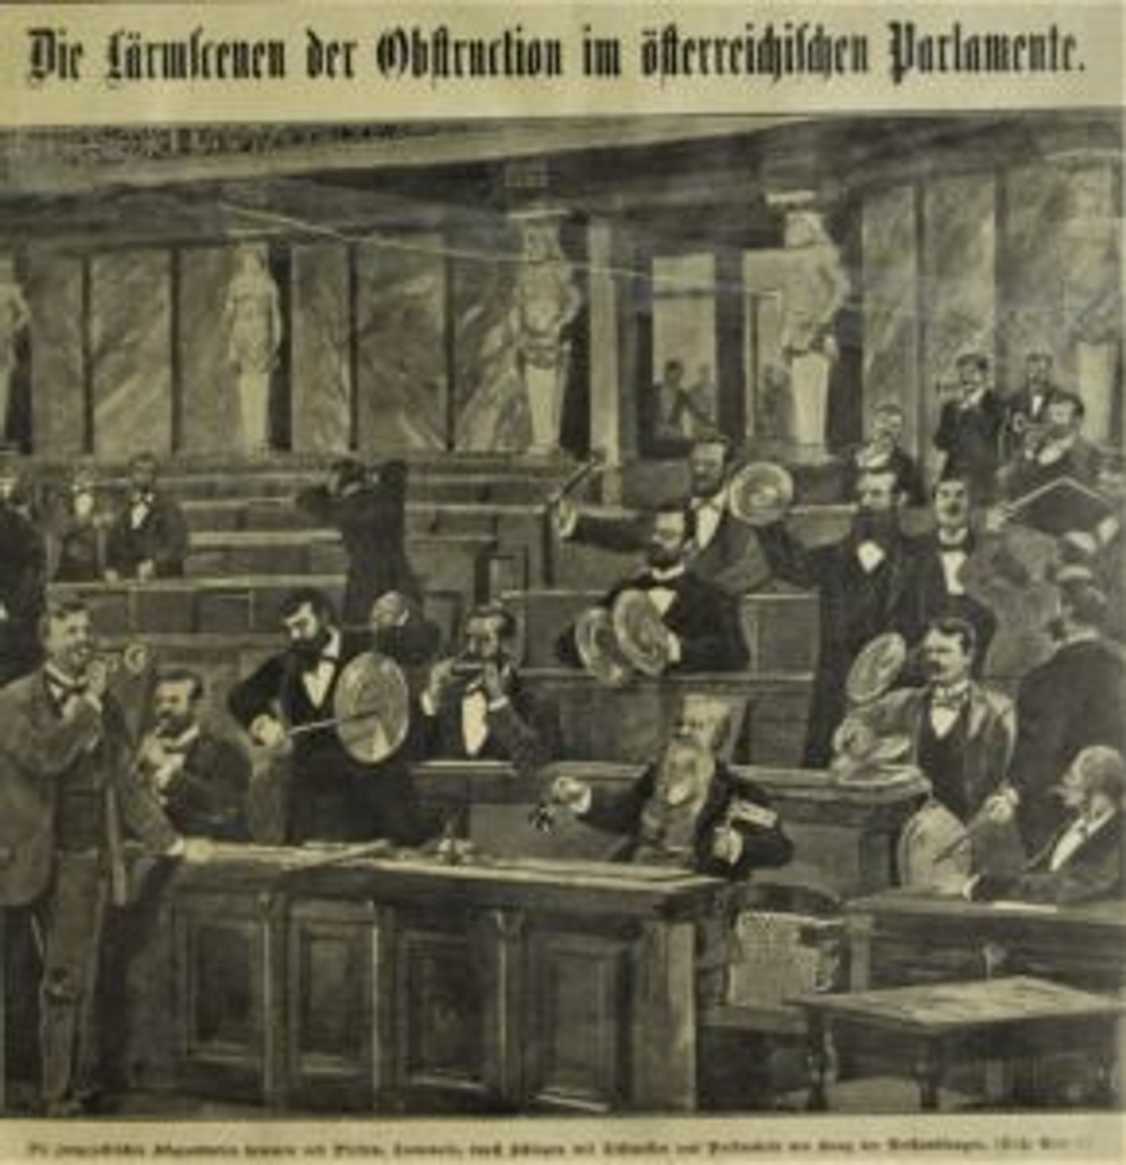 Die Lärmscenen der Obstruktion im österreichischen Parlamente / Hlučné scény obstrukce v rakouském parlamentu (Das interessante Blatt, 14. 6. 1900).
